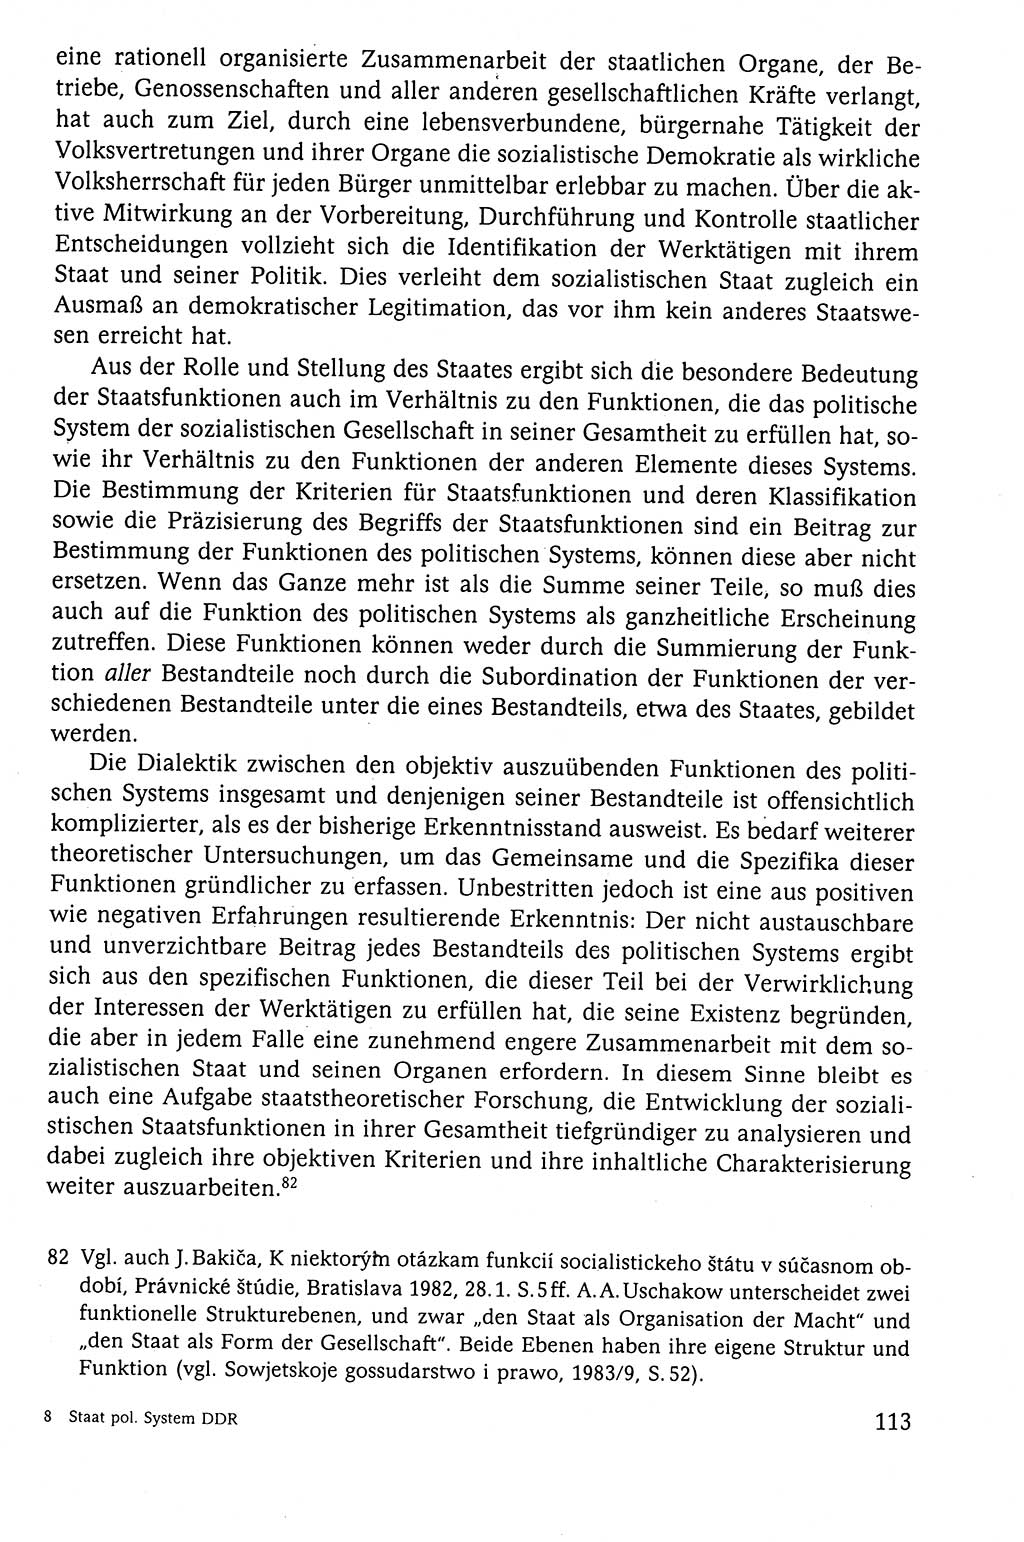 Der Staat im politischen System der DDR (Deutsche Demokratische Republik) 1986, Seite 113 (St. pol. Sys. DDR 1986, S. 113)